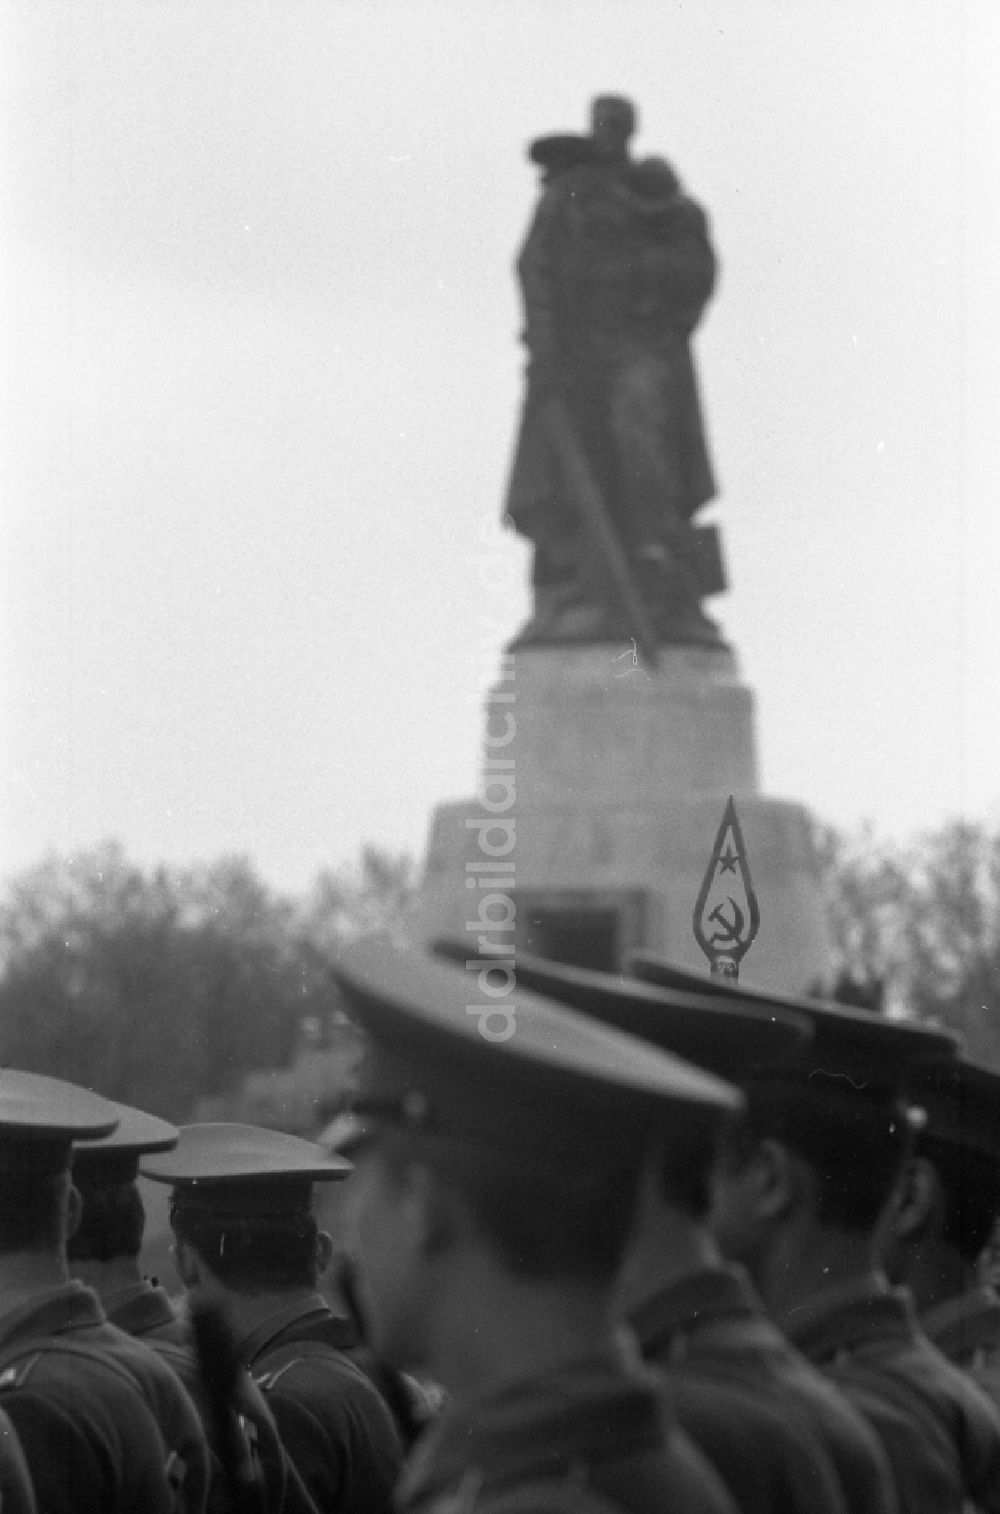 Berlin: Marschformation von Soldaten anläßlich einer Kranzniederlegung am Ehrenmal für die gefallenen sowjetischen Soldaten in Berlin auf dem Gebiet der ehemaligen DDR, Deutsche Demokratische Republik